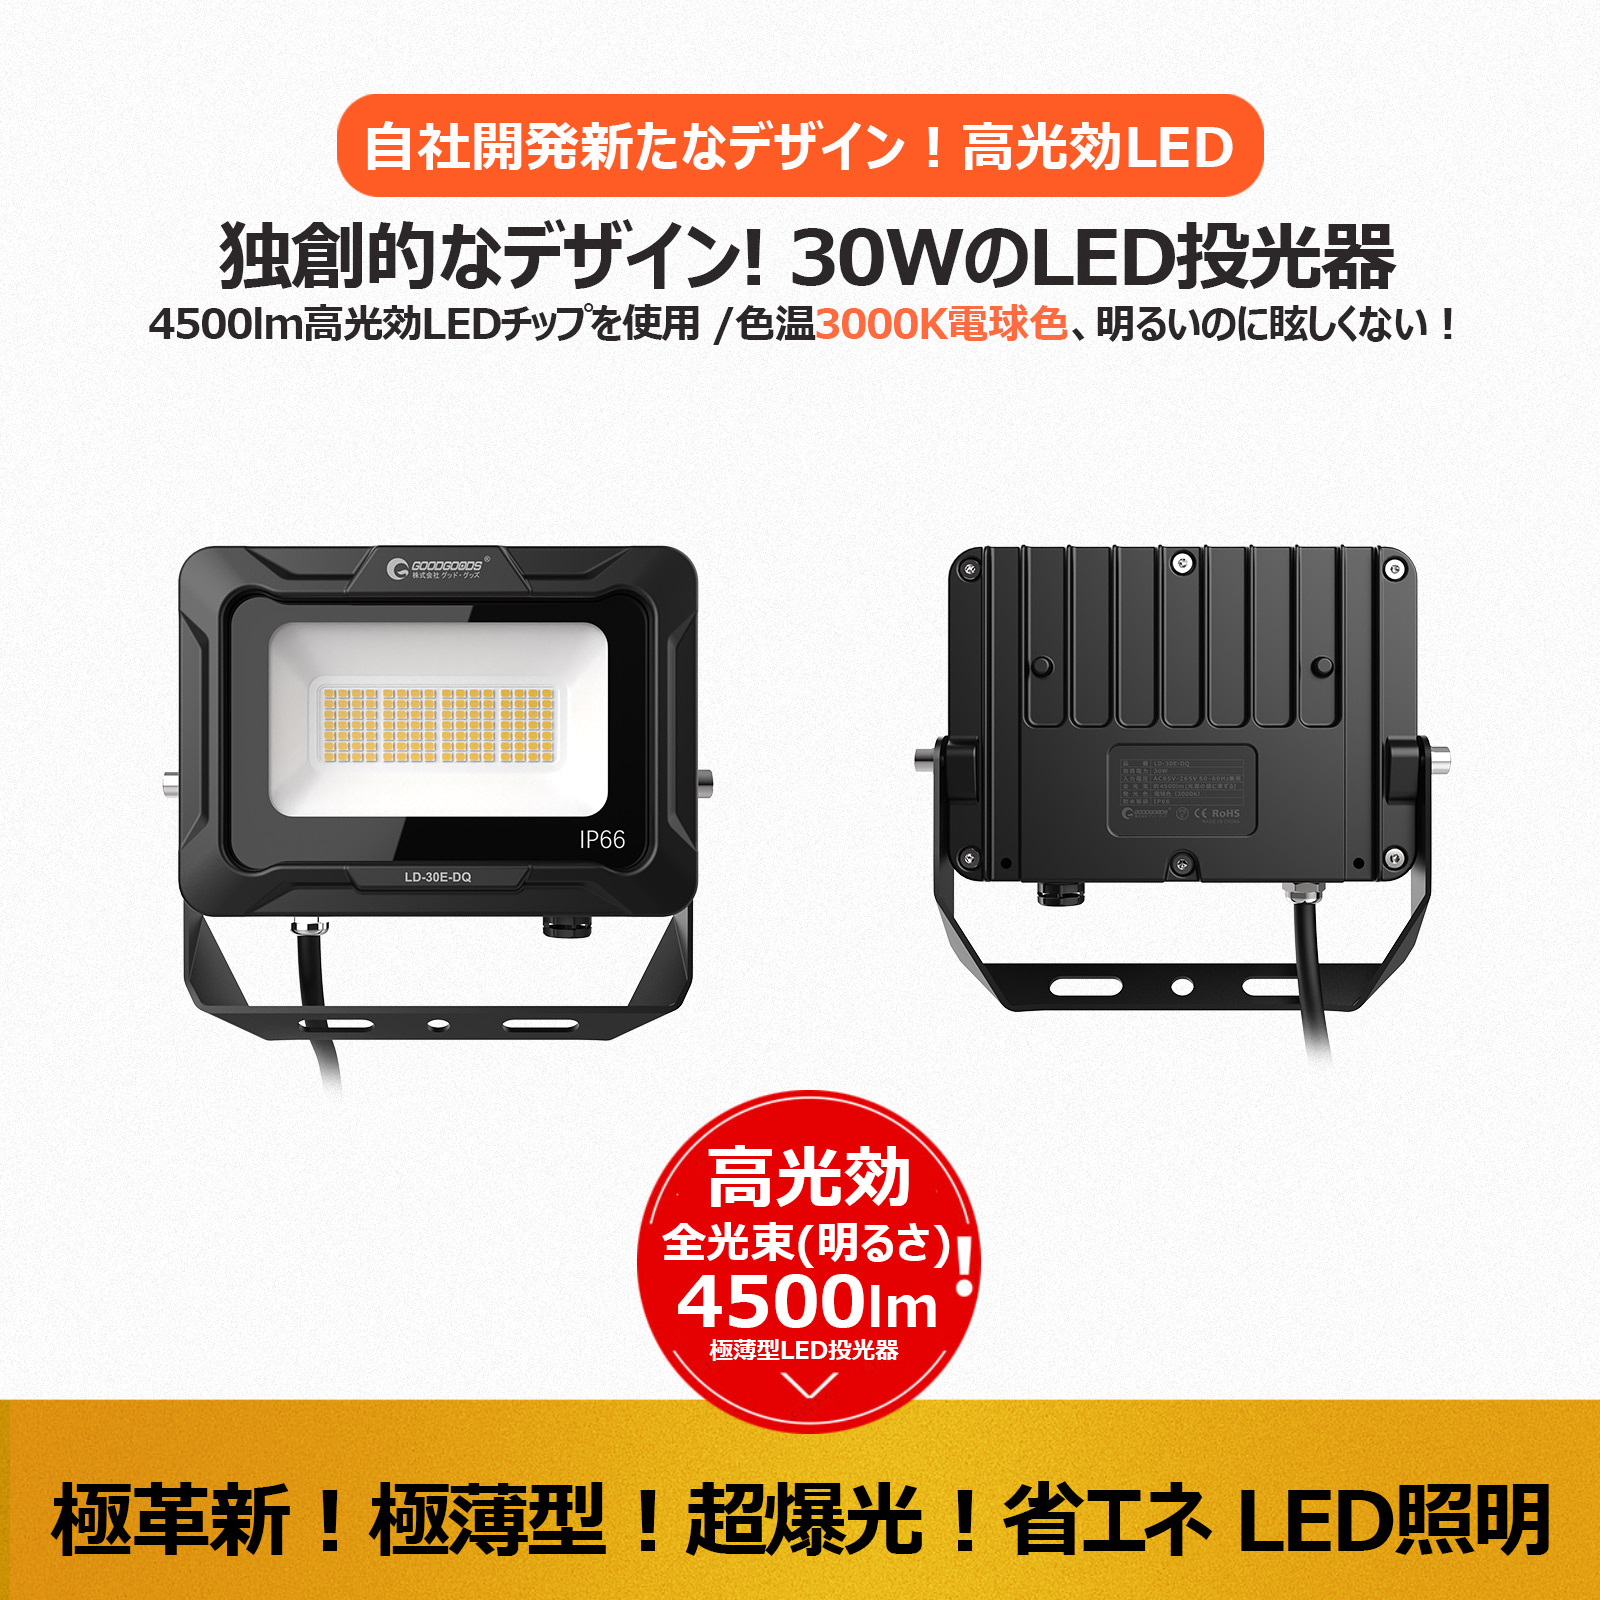 led投光器 30w オリジナルデザイン 消費電力 112粒チップ